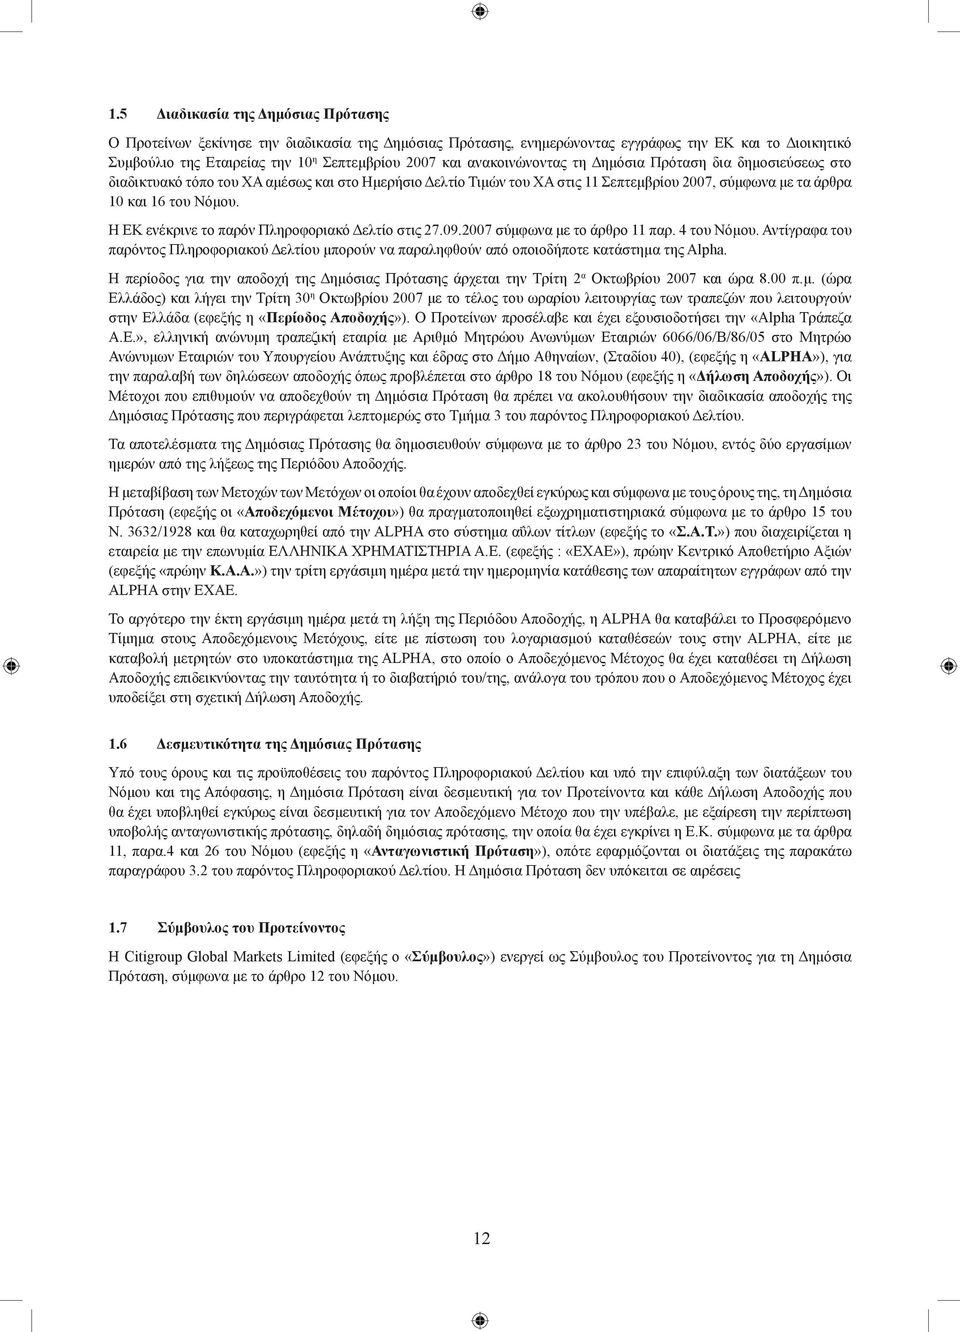 Η ΕΚ ενέκρινε το παρόν Πληροφοριακό Δελτίο στις 27.09.2007 σύμφωνα με το άρθρο 11 παρ. 4 του Νόμου.